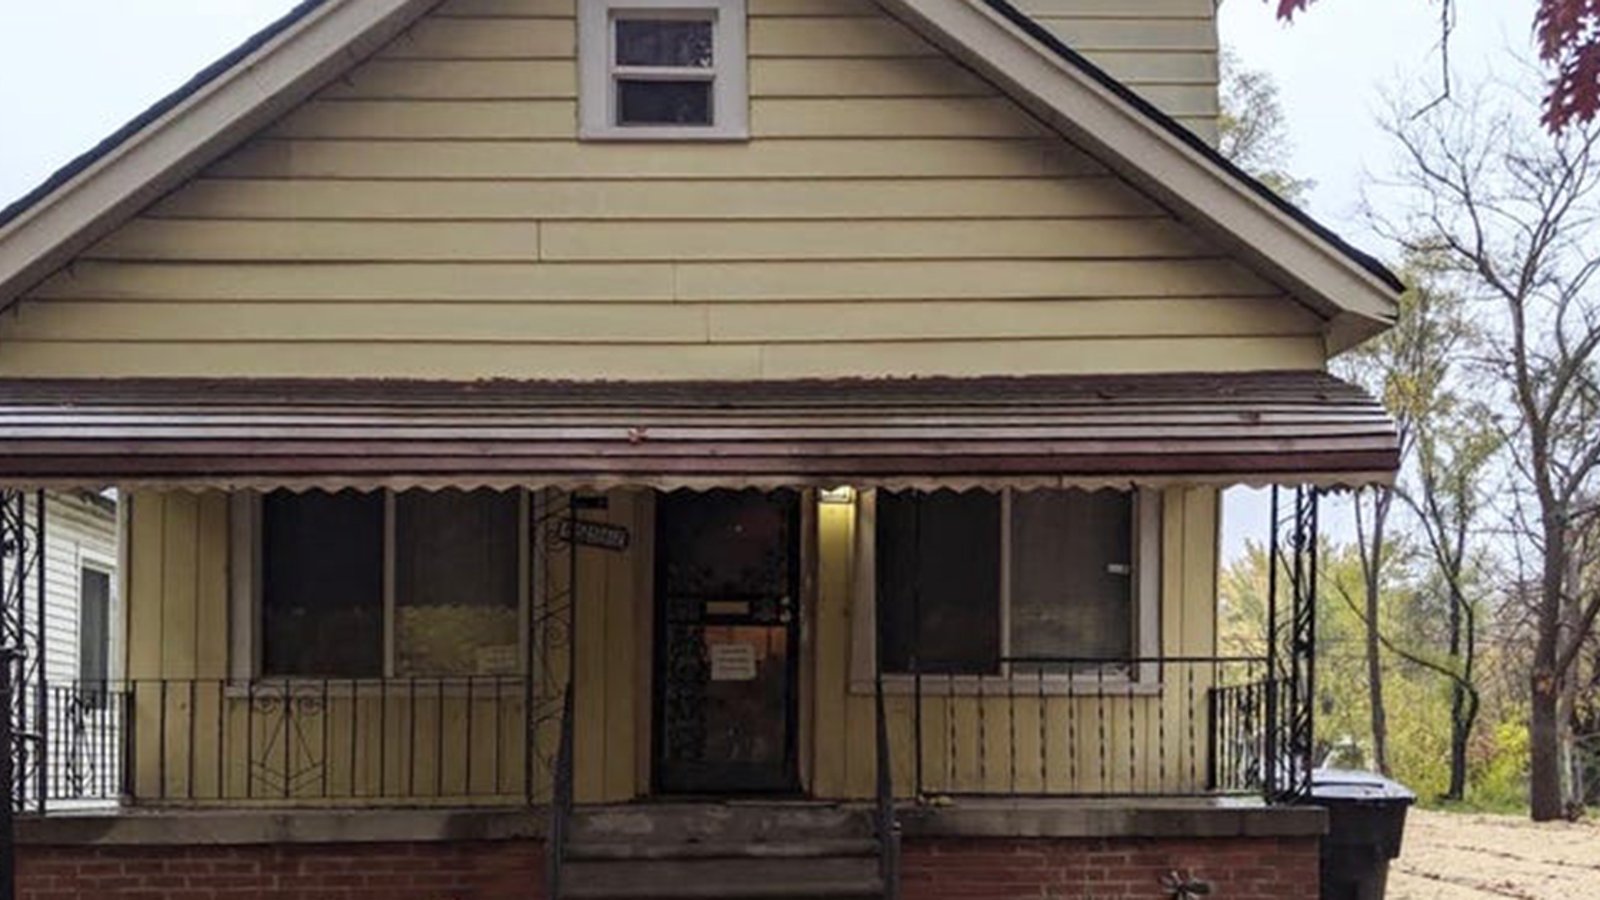 Un sans-abri achète une maison abandonnée à 1500$ et la rénove pendant 10 ans pour sa femme